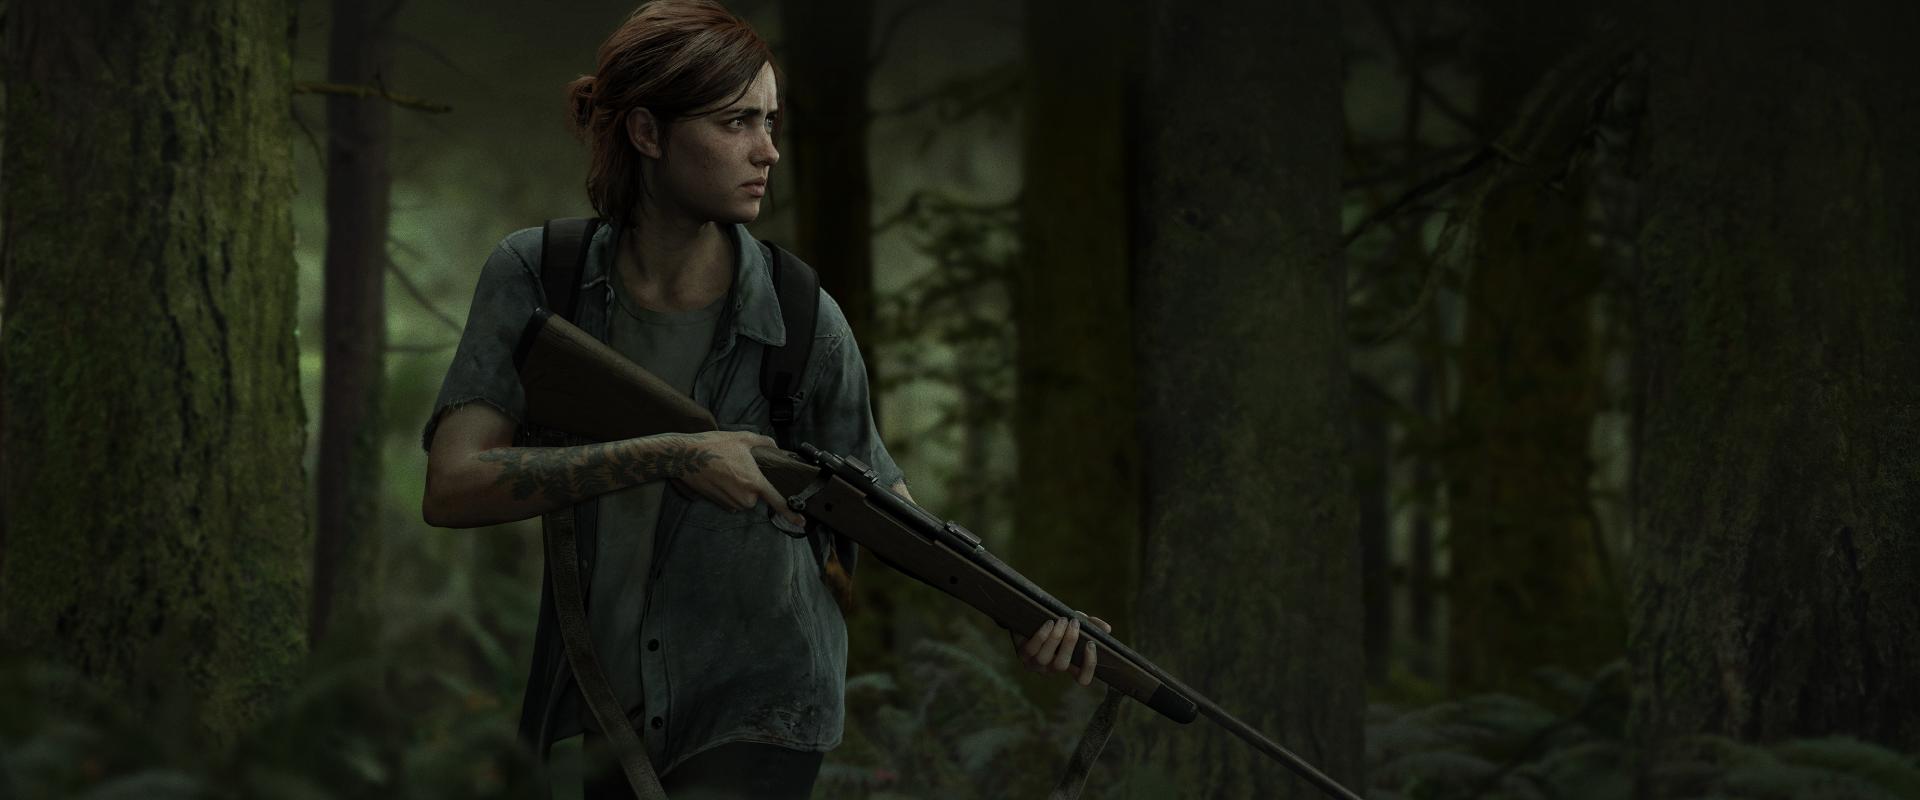 Megéri megvenni az újra kiadott The Last of Us Part II-t? – Itt a válasz!